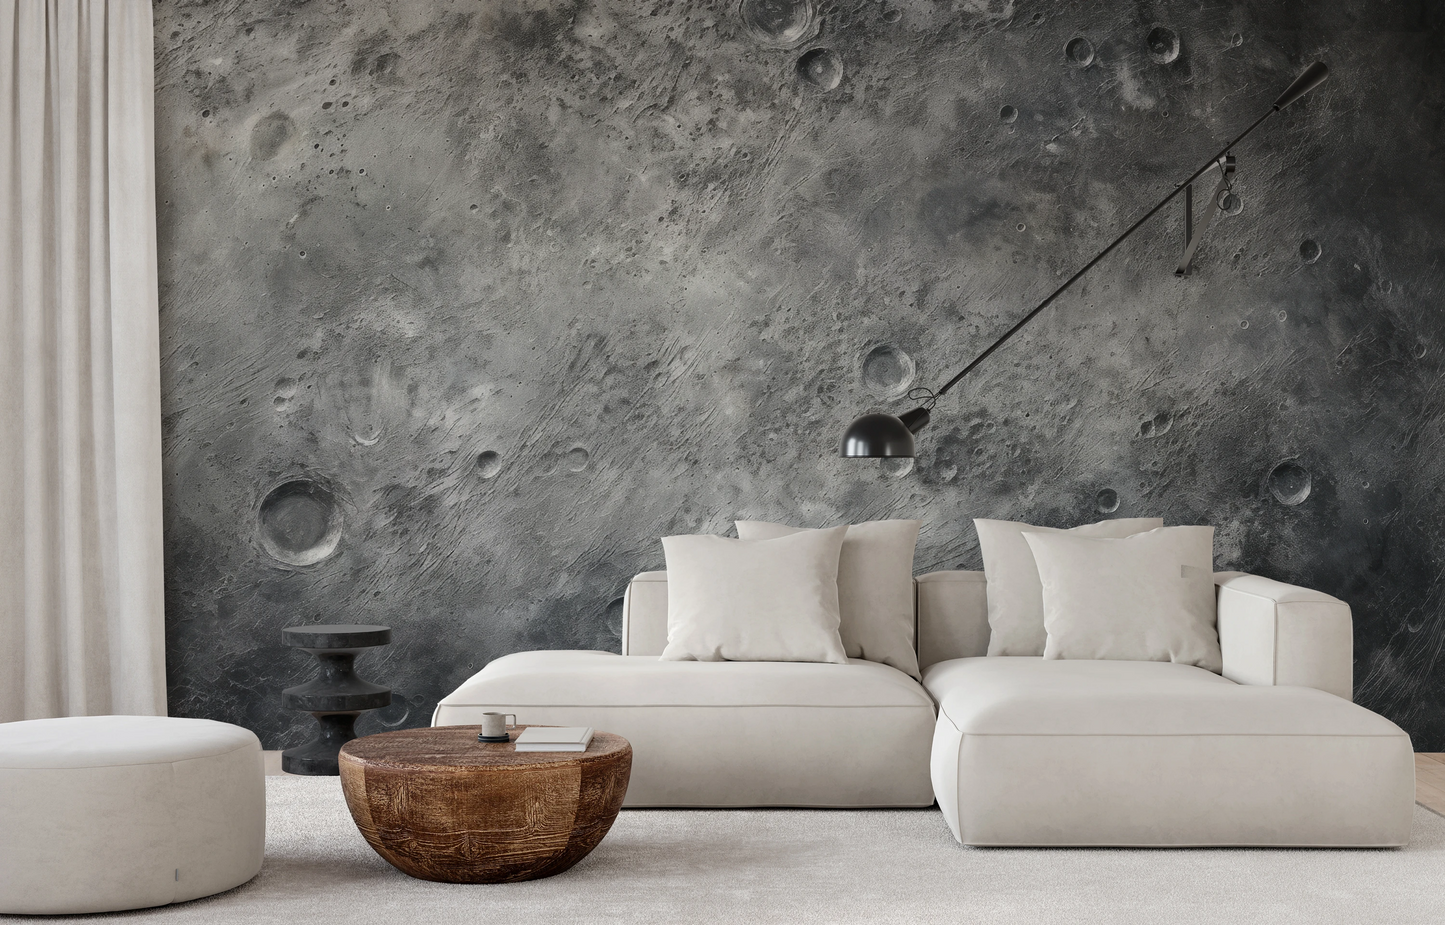 Fototapeta malowana o nazwie Lunar Majesty pokazana w aranżacji wnętrza.